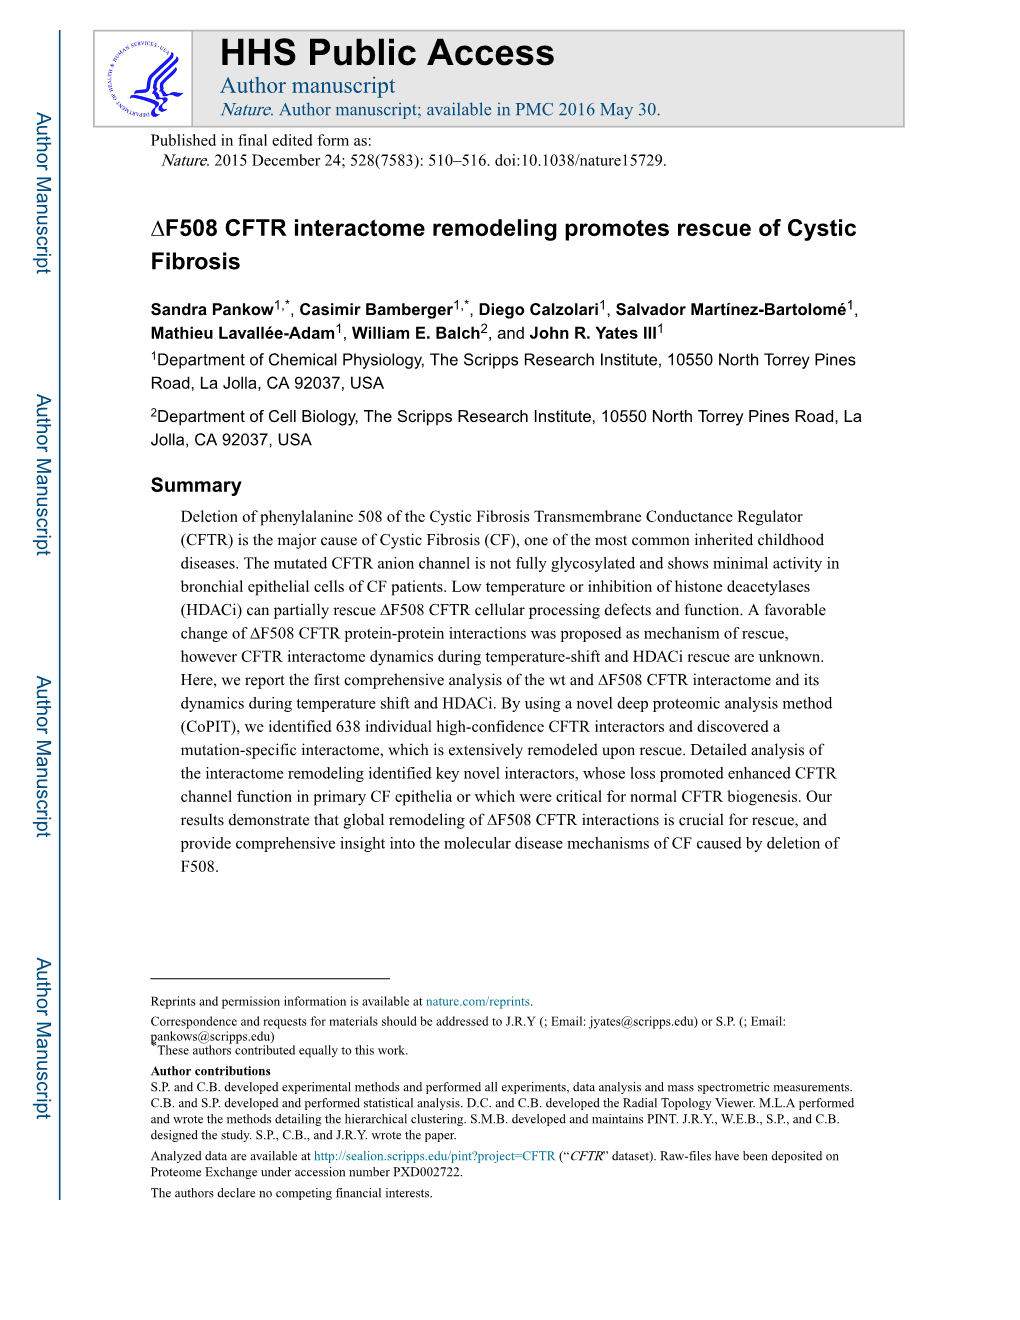 ΔF508 CFTR Interactome Remodeling Promotes Rescue of Cystic Fibrosis